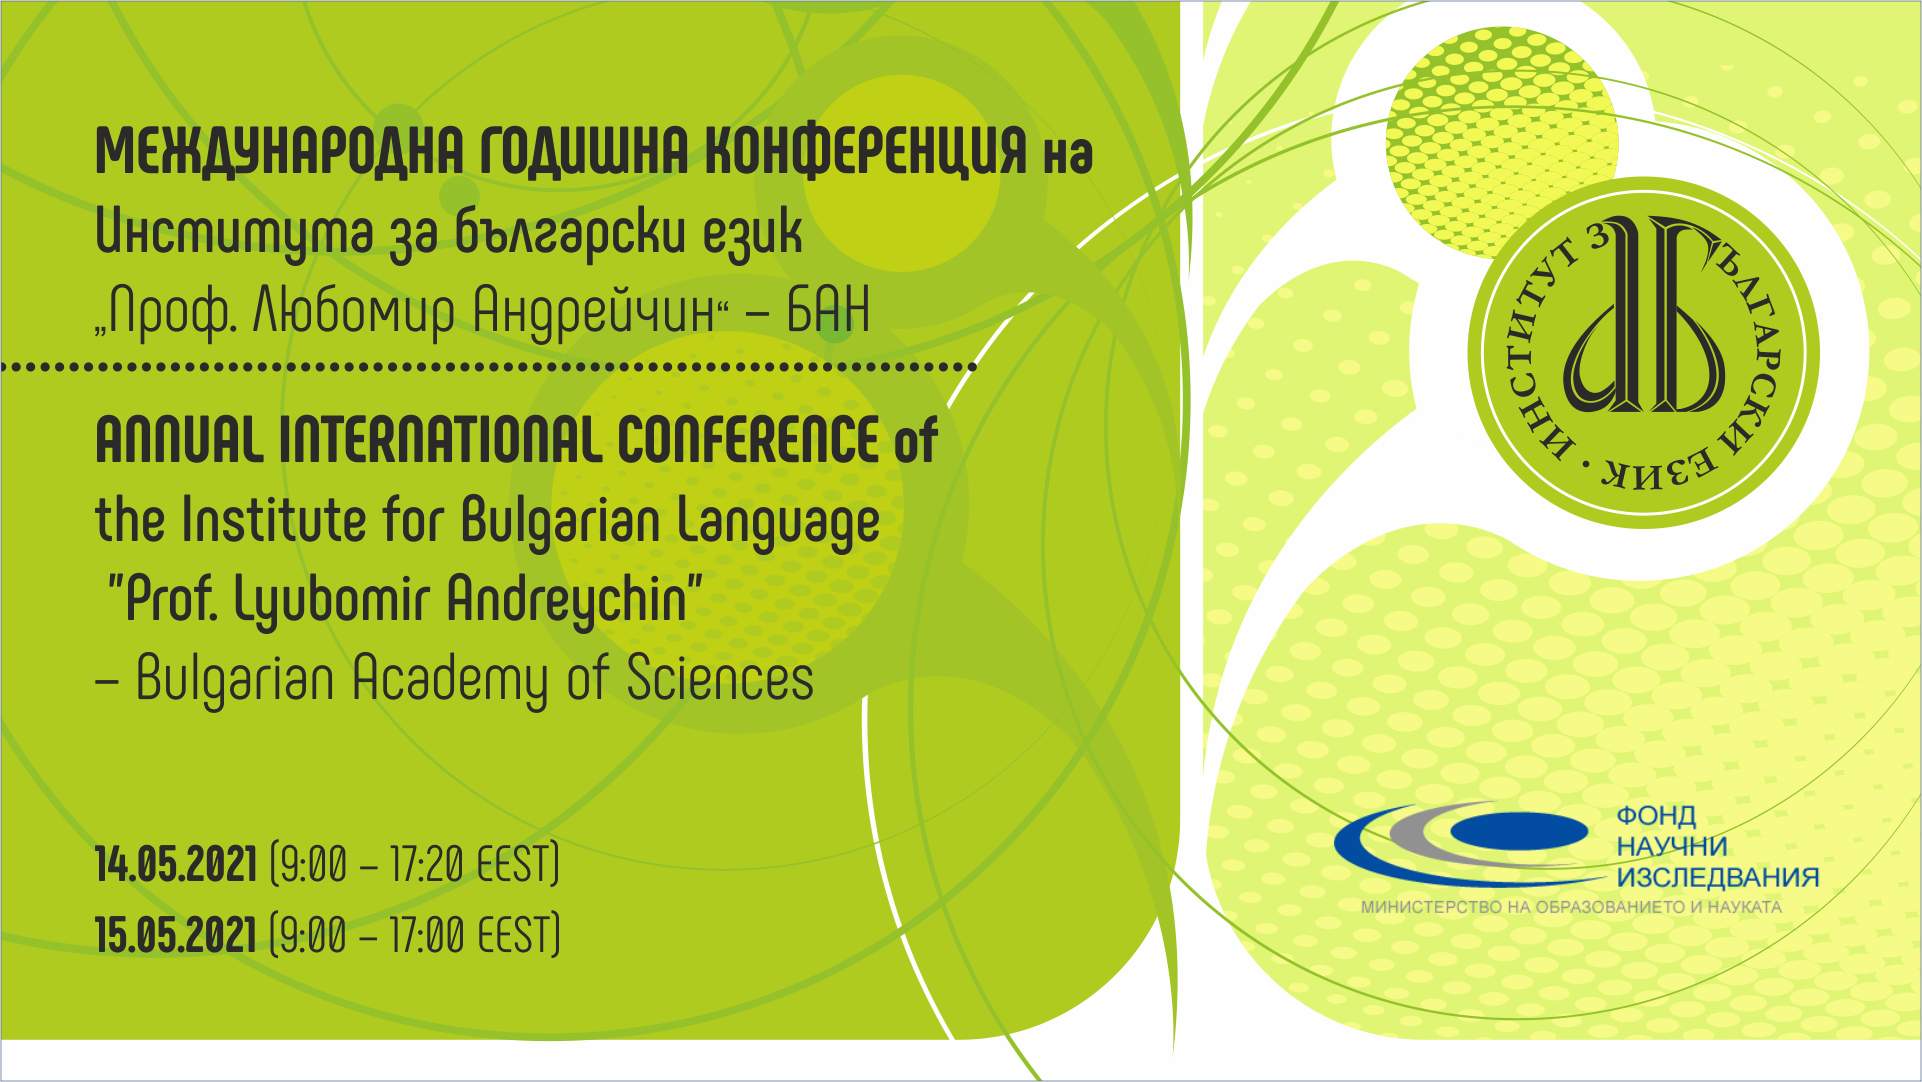 Международна годишна конференция на Института за български език – 2021 г.